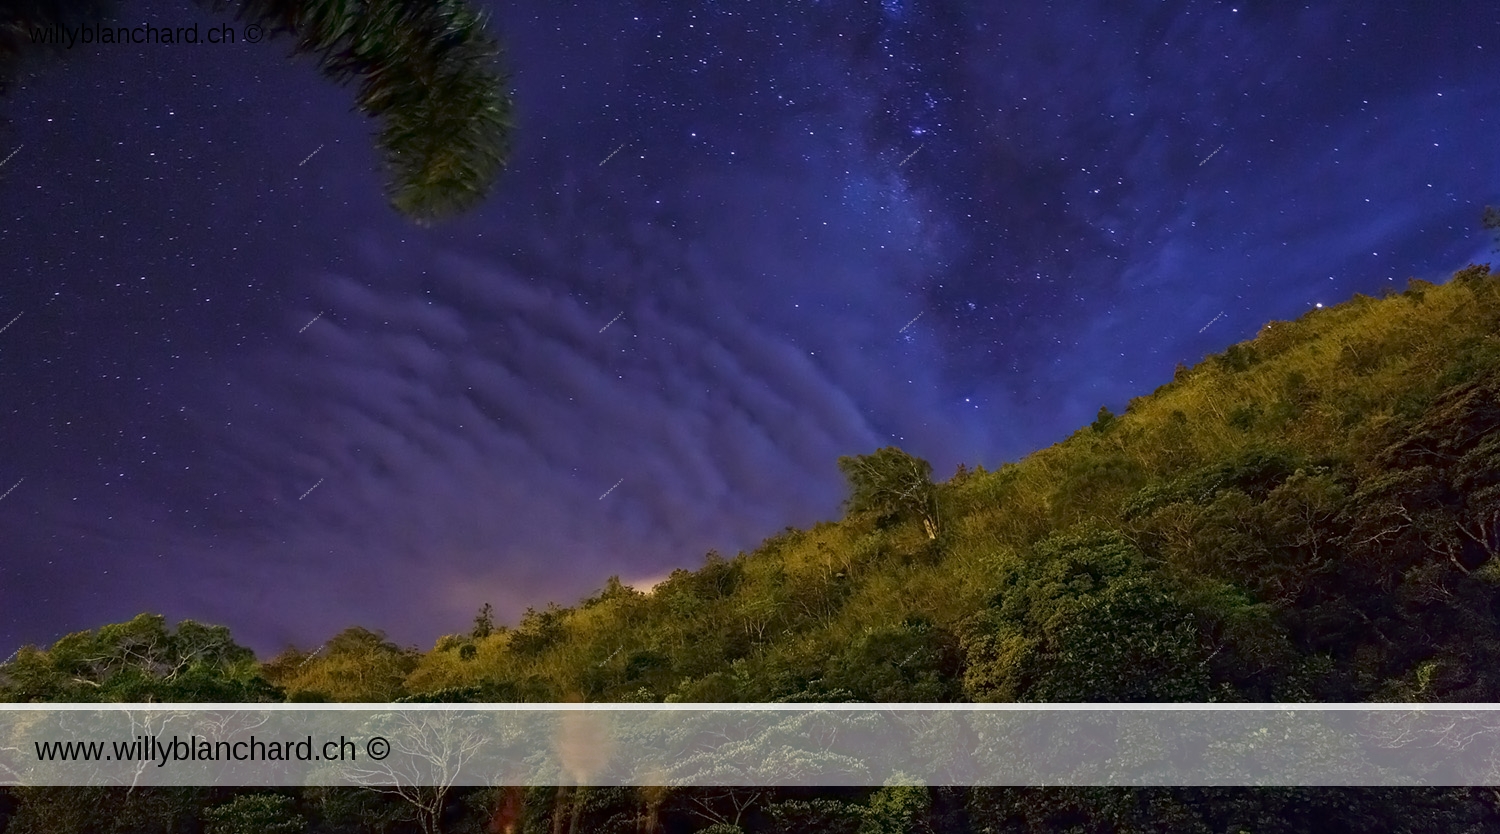 Panama, Chiriqui, Boquete. Ciel nuageux et étoilé de nuit. Nuit sous les étoiles. 17 septembre 2015 © Willy Blanchard